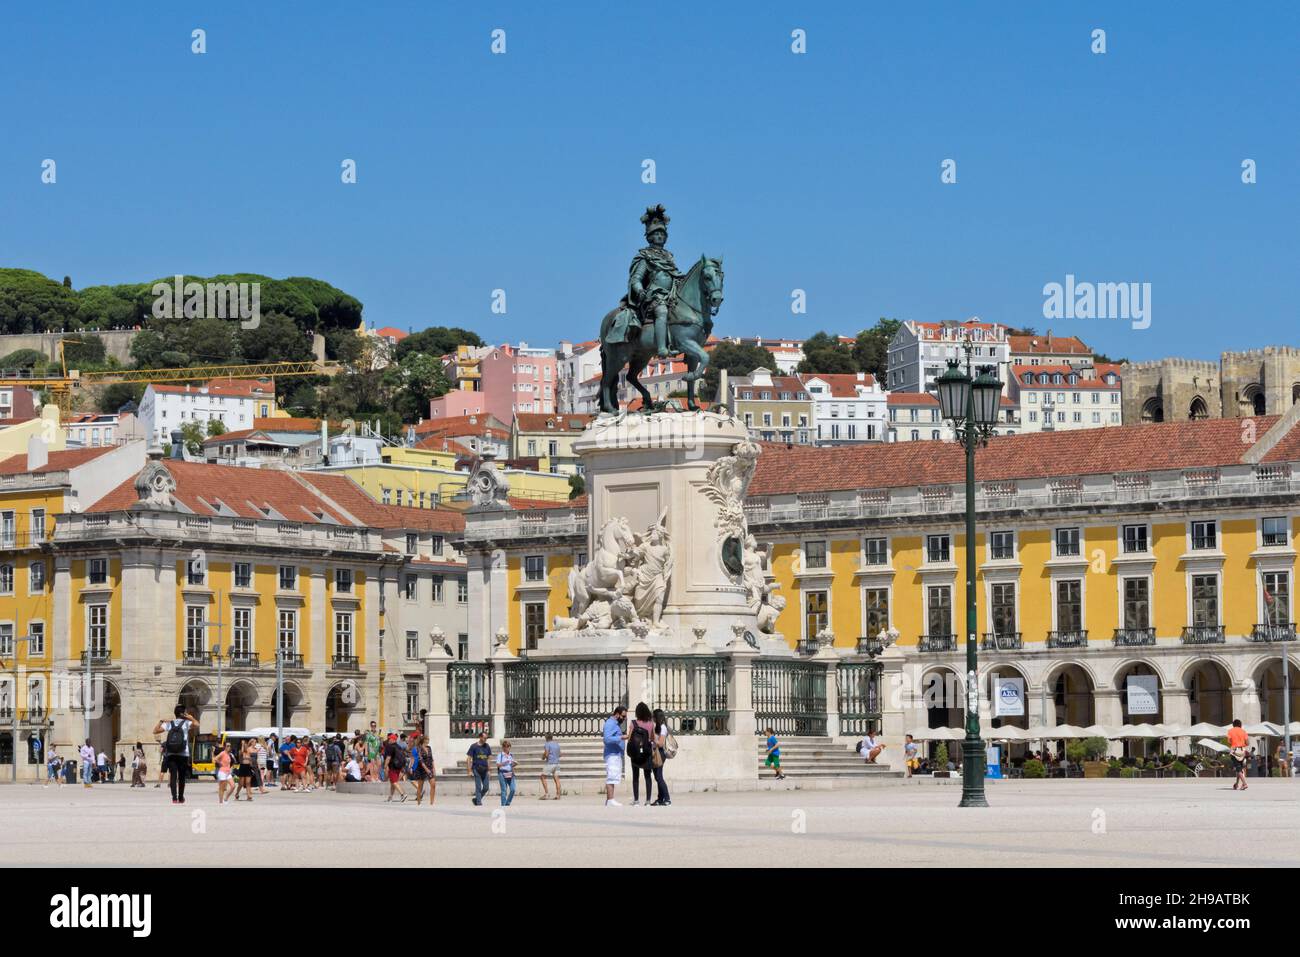 Statue du roi José I à Commerce Square, Lisbonne, Portugal Banque D'Images